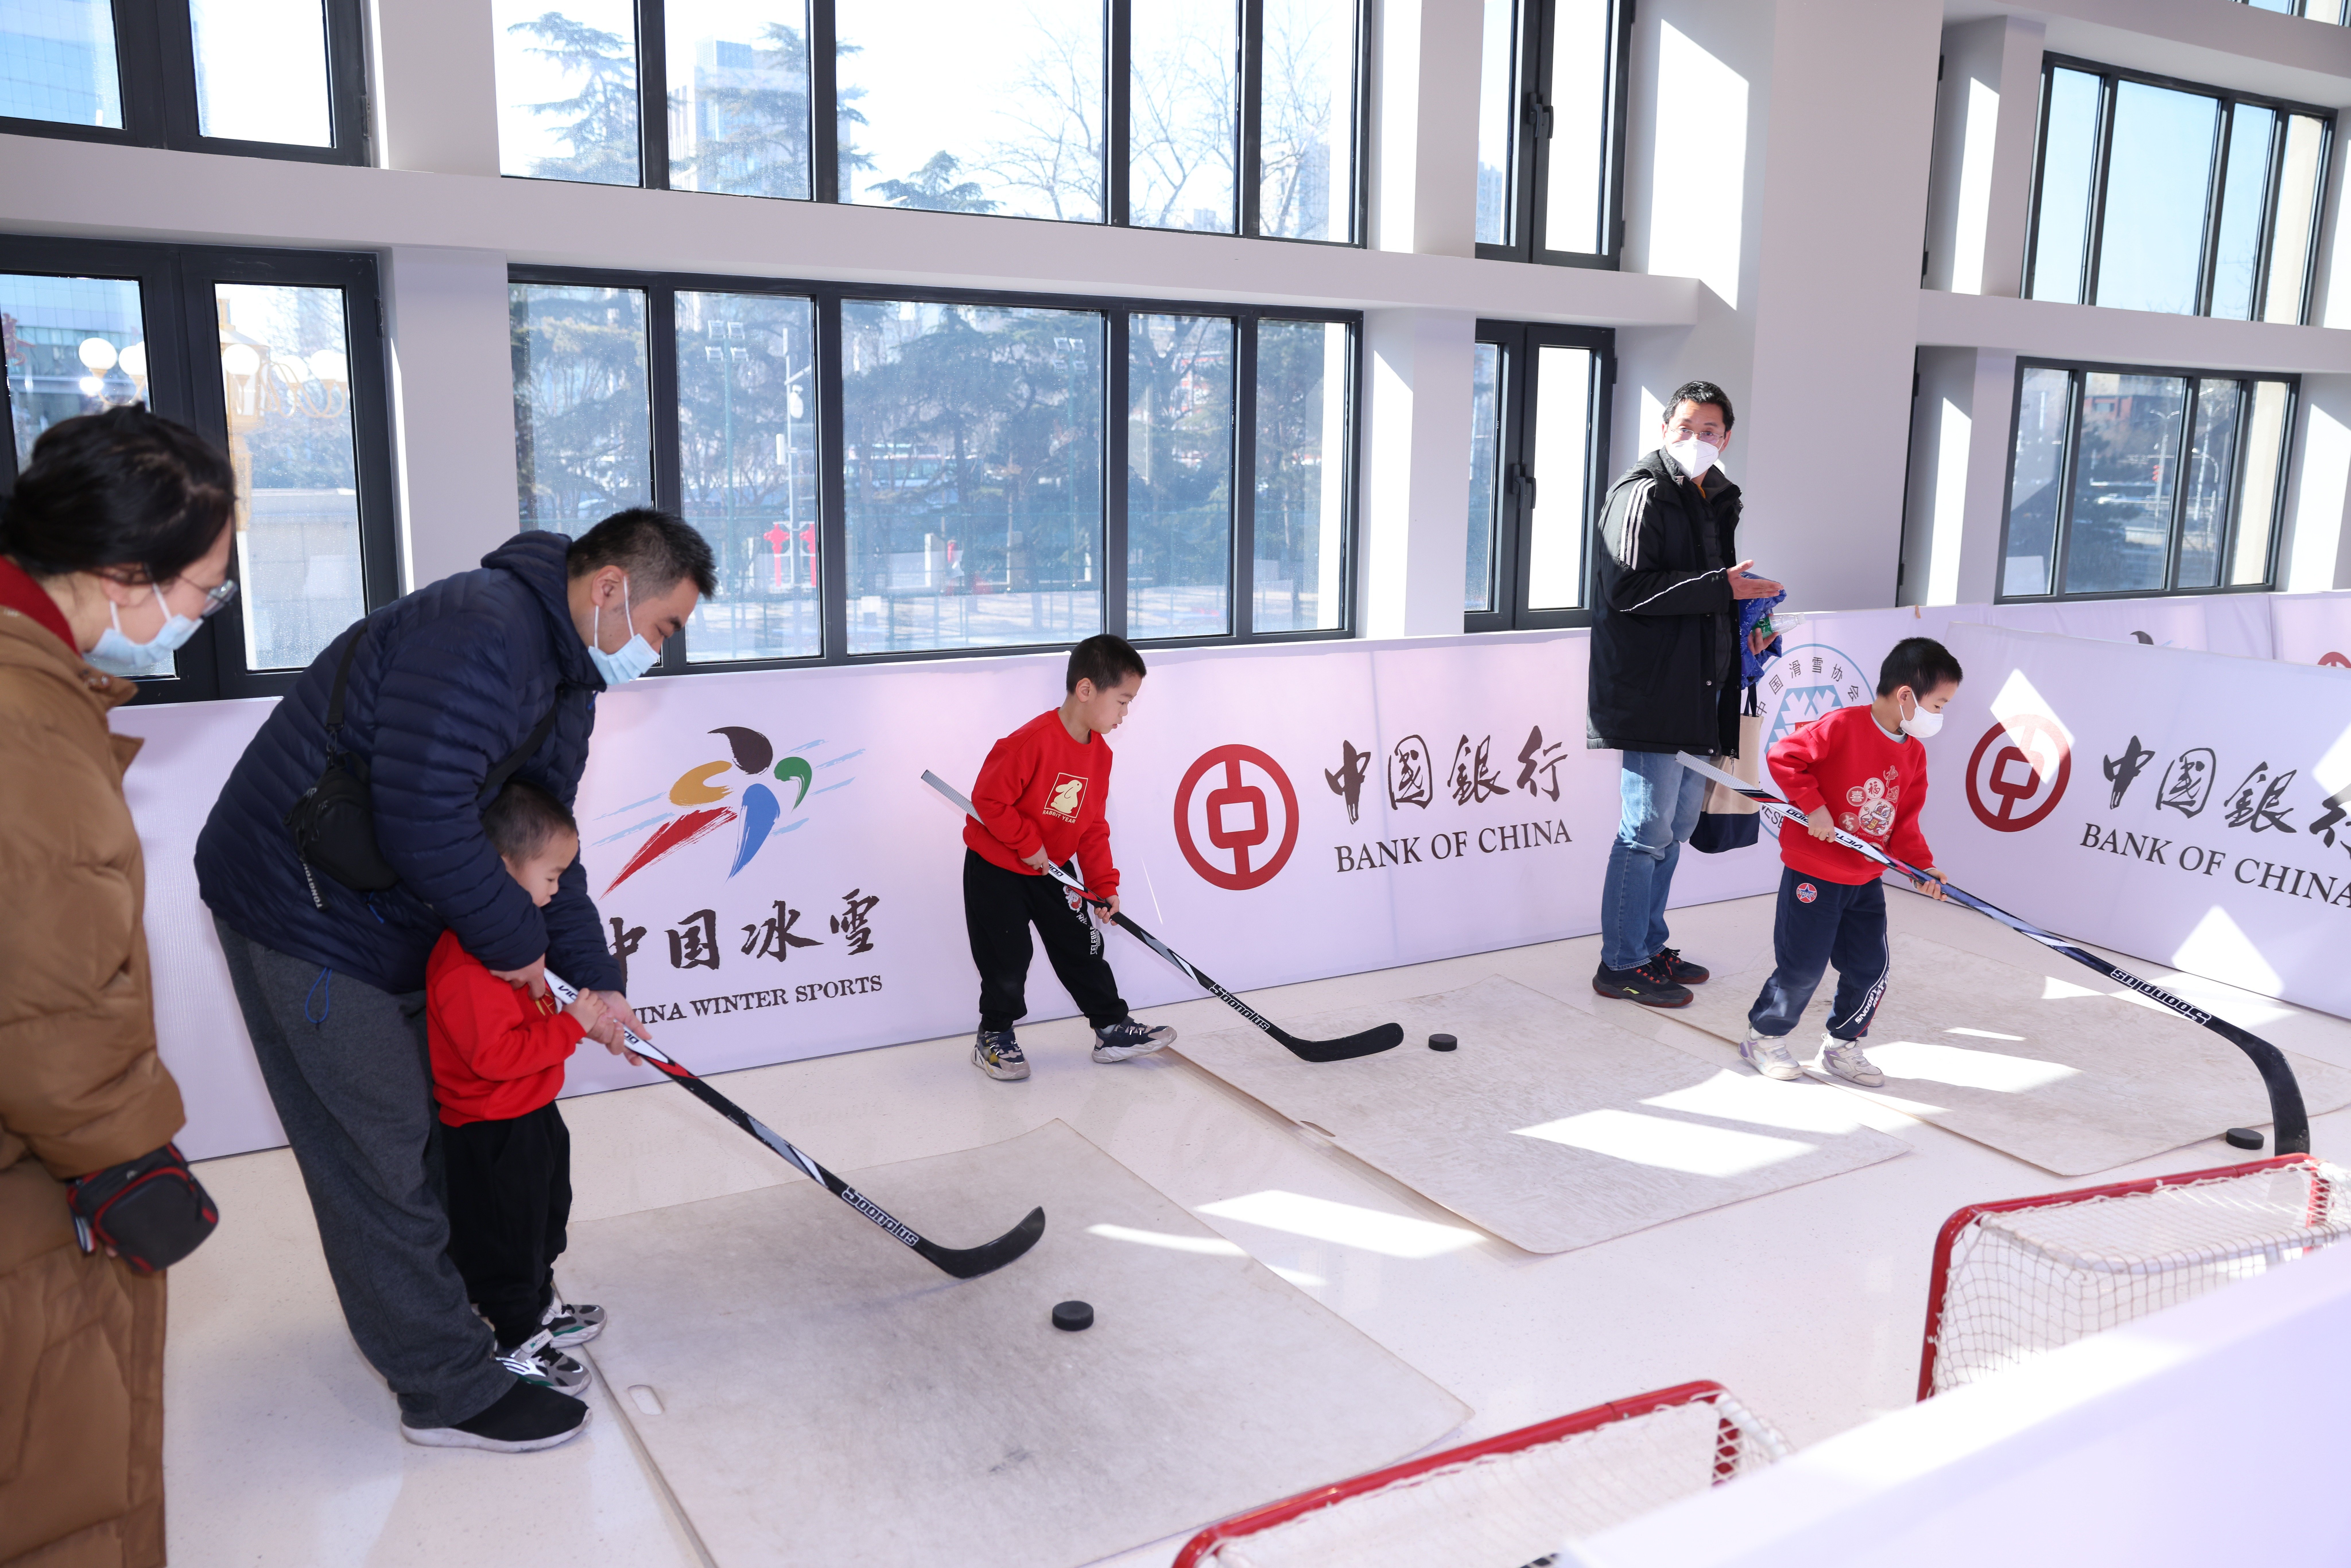 庆祝北京冬奥会成功举办一周年 中国冰雪大篷车首体与市民共享冰雪乐趣